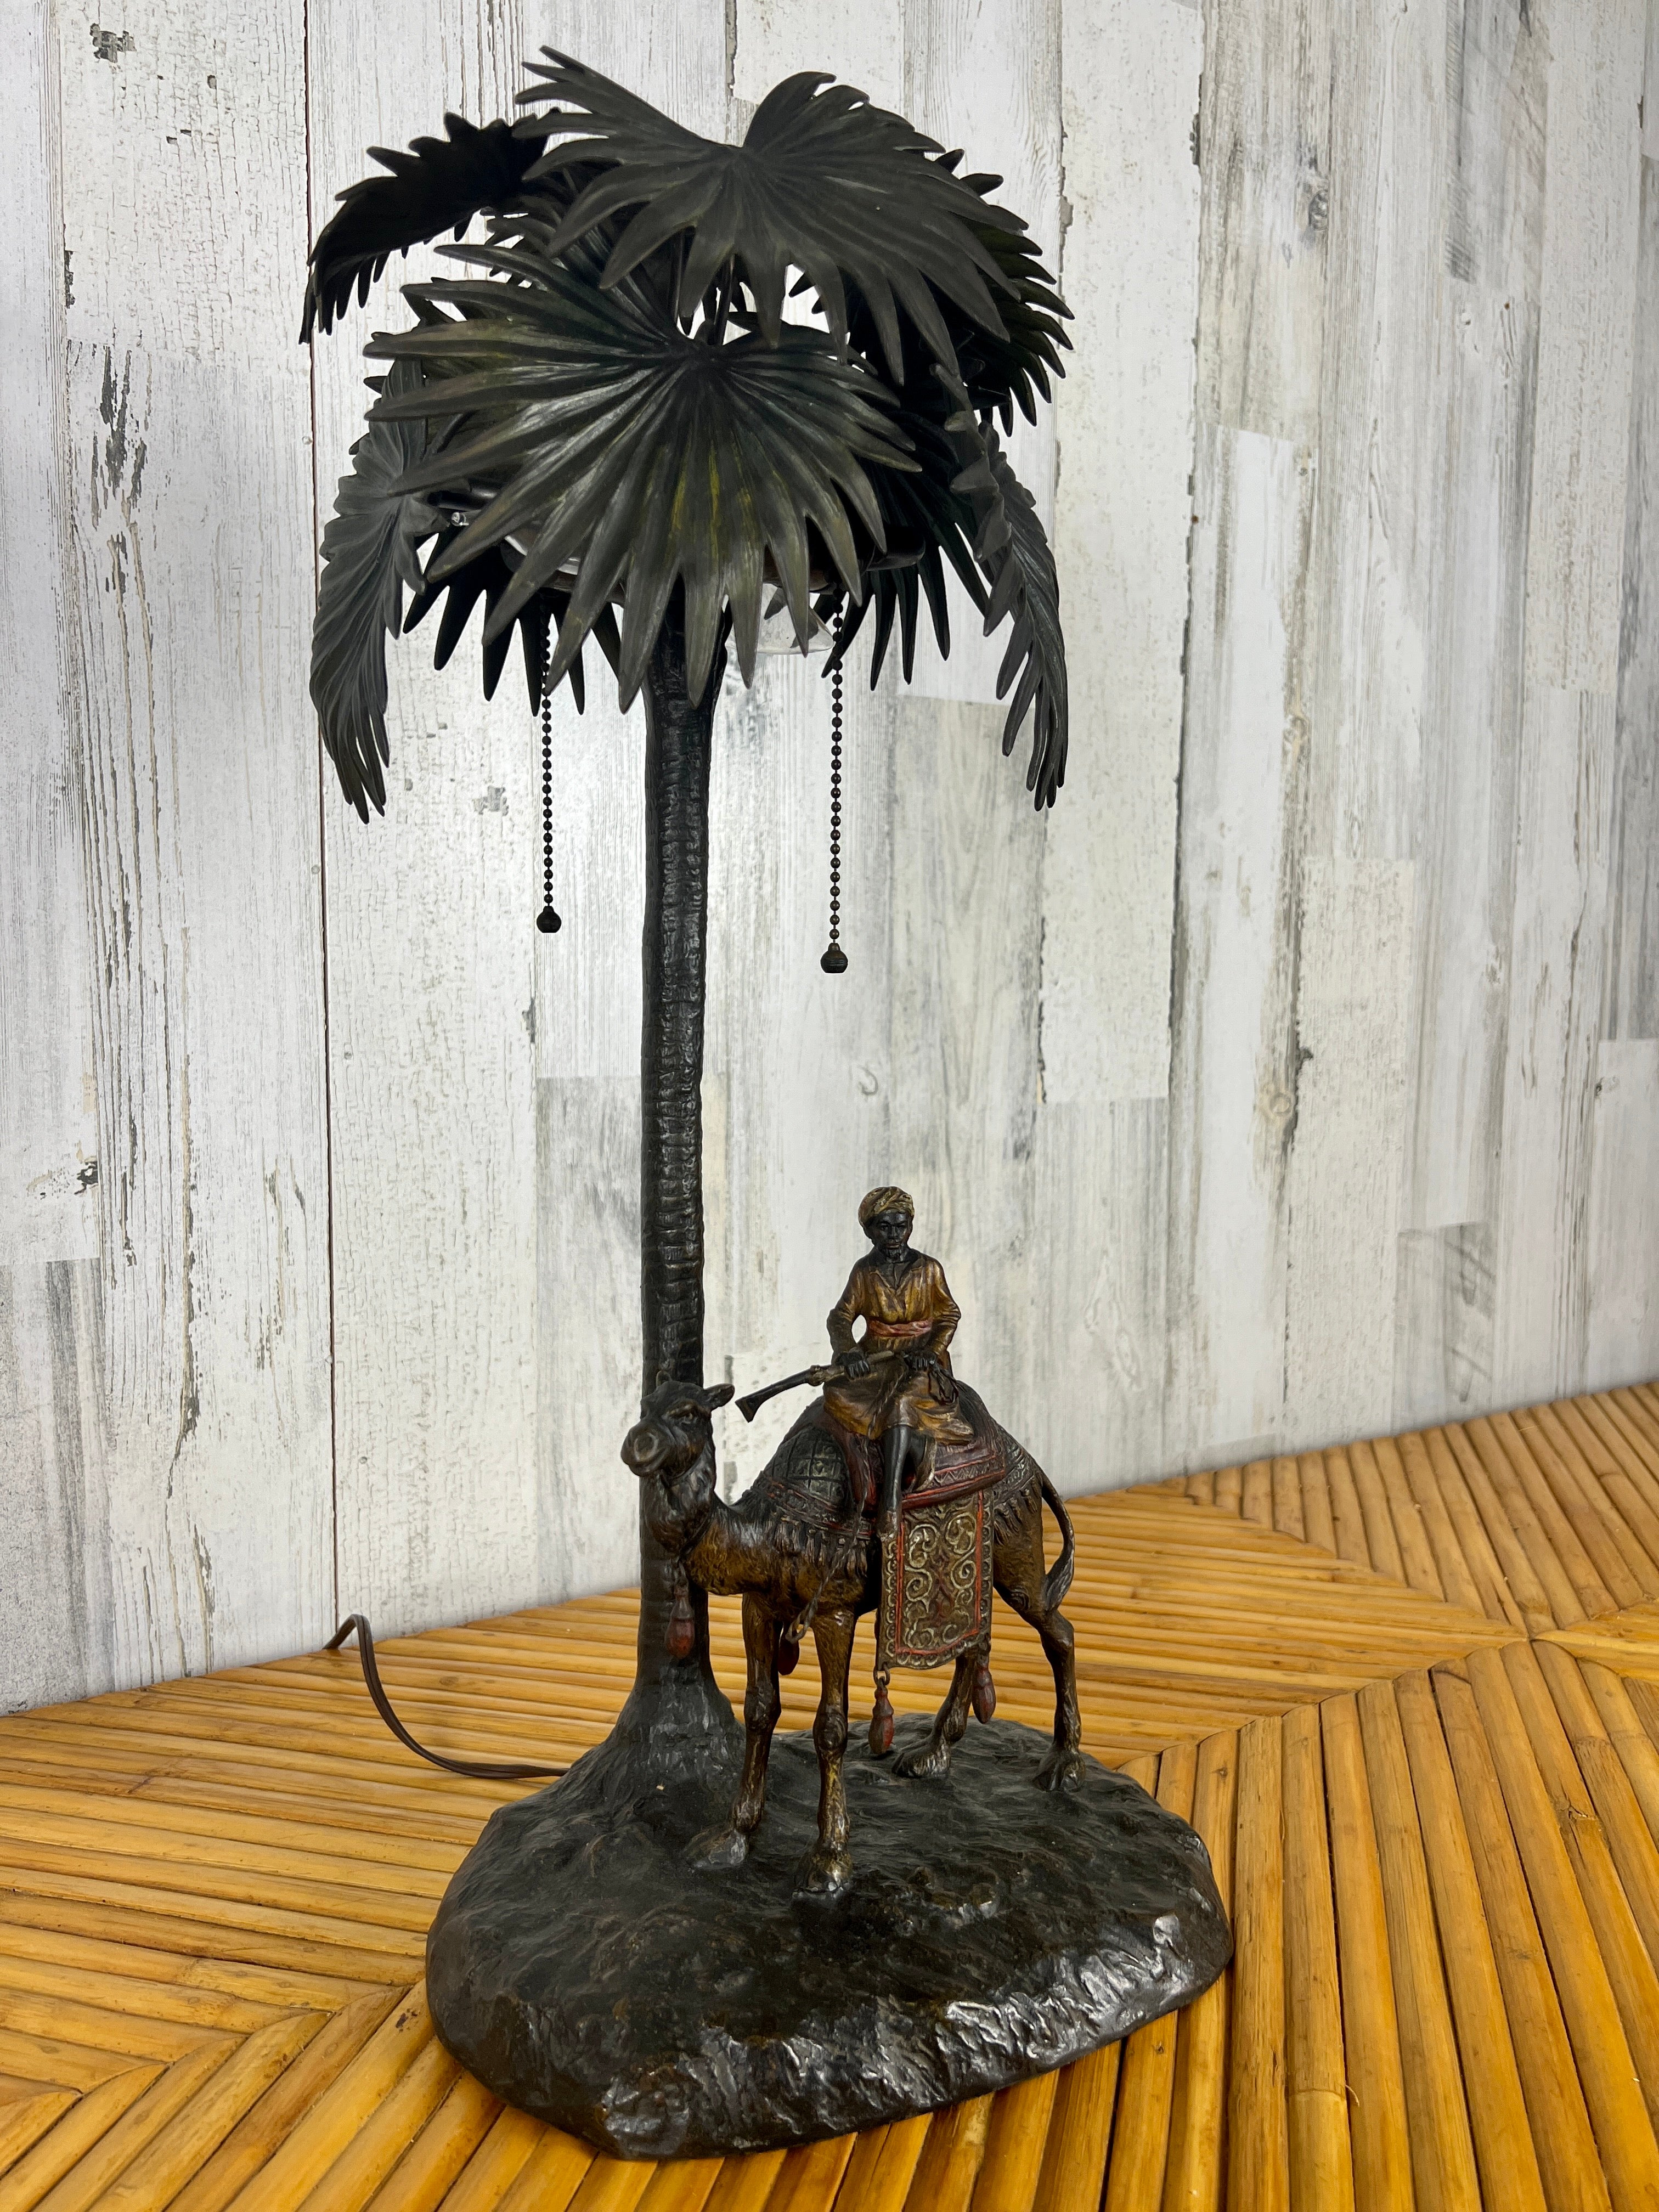 Orientalische Lampe aus Bronze mit Kaltbemalung, die Bergman zugeschrieben wird und einen Mann aus dem Nahen Osten zeigt, der auf einem Kamel reitet. 
Gezeichnet Österreich.